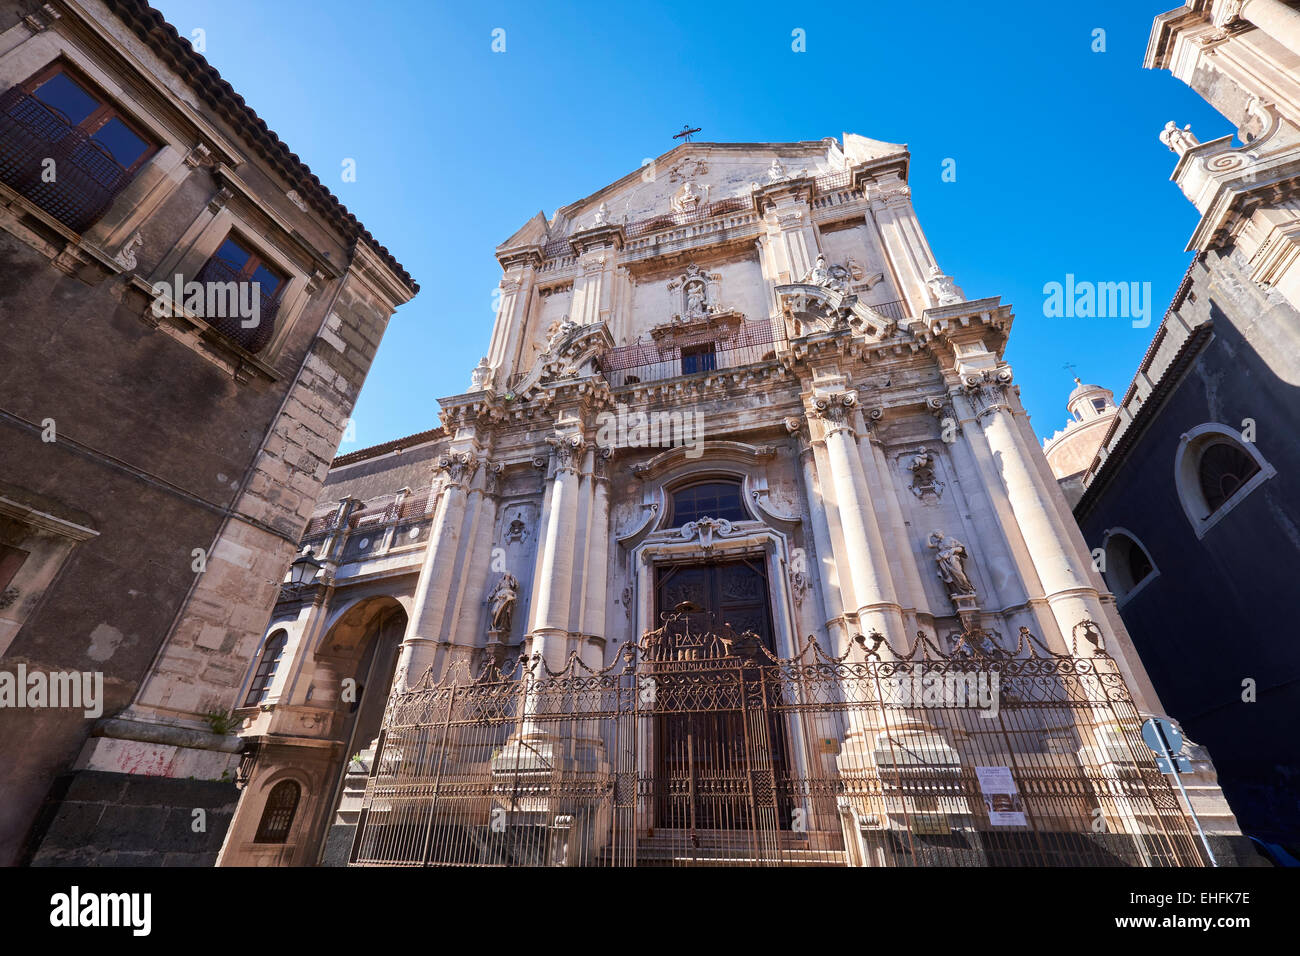 San Benedetto religiöse Architektur in Catania, Sizilien, Italien. Italienischen Tourismus, Reise- und Urlaubsziel. Stockfoto